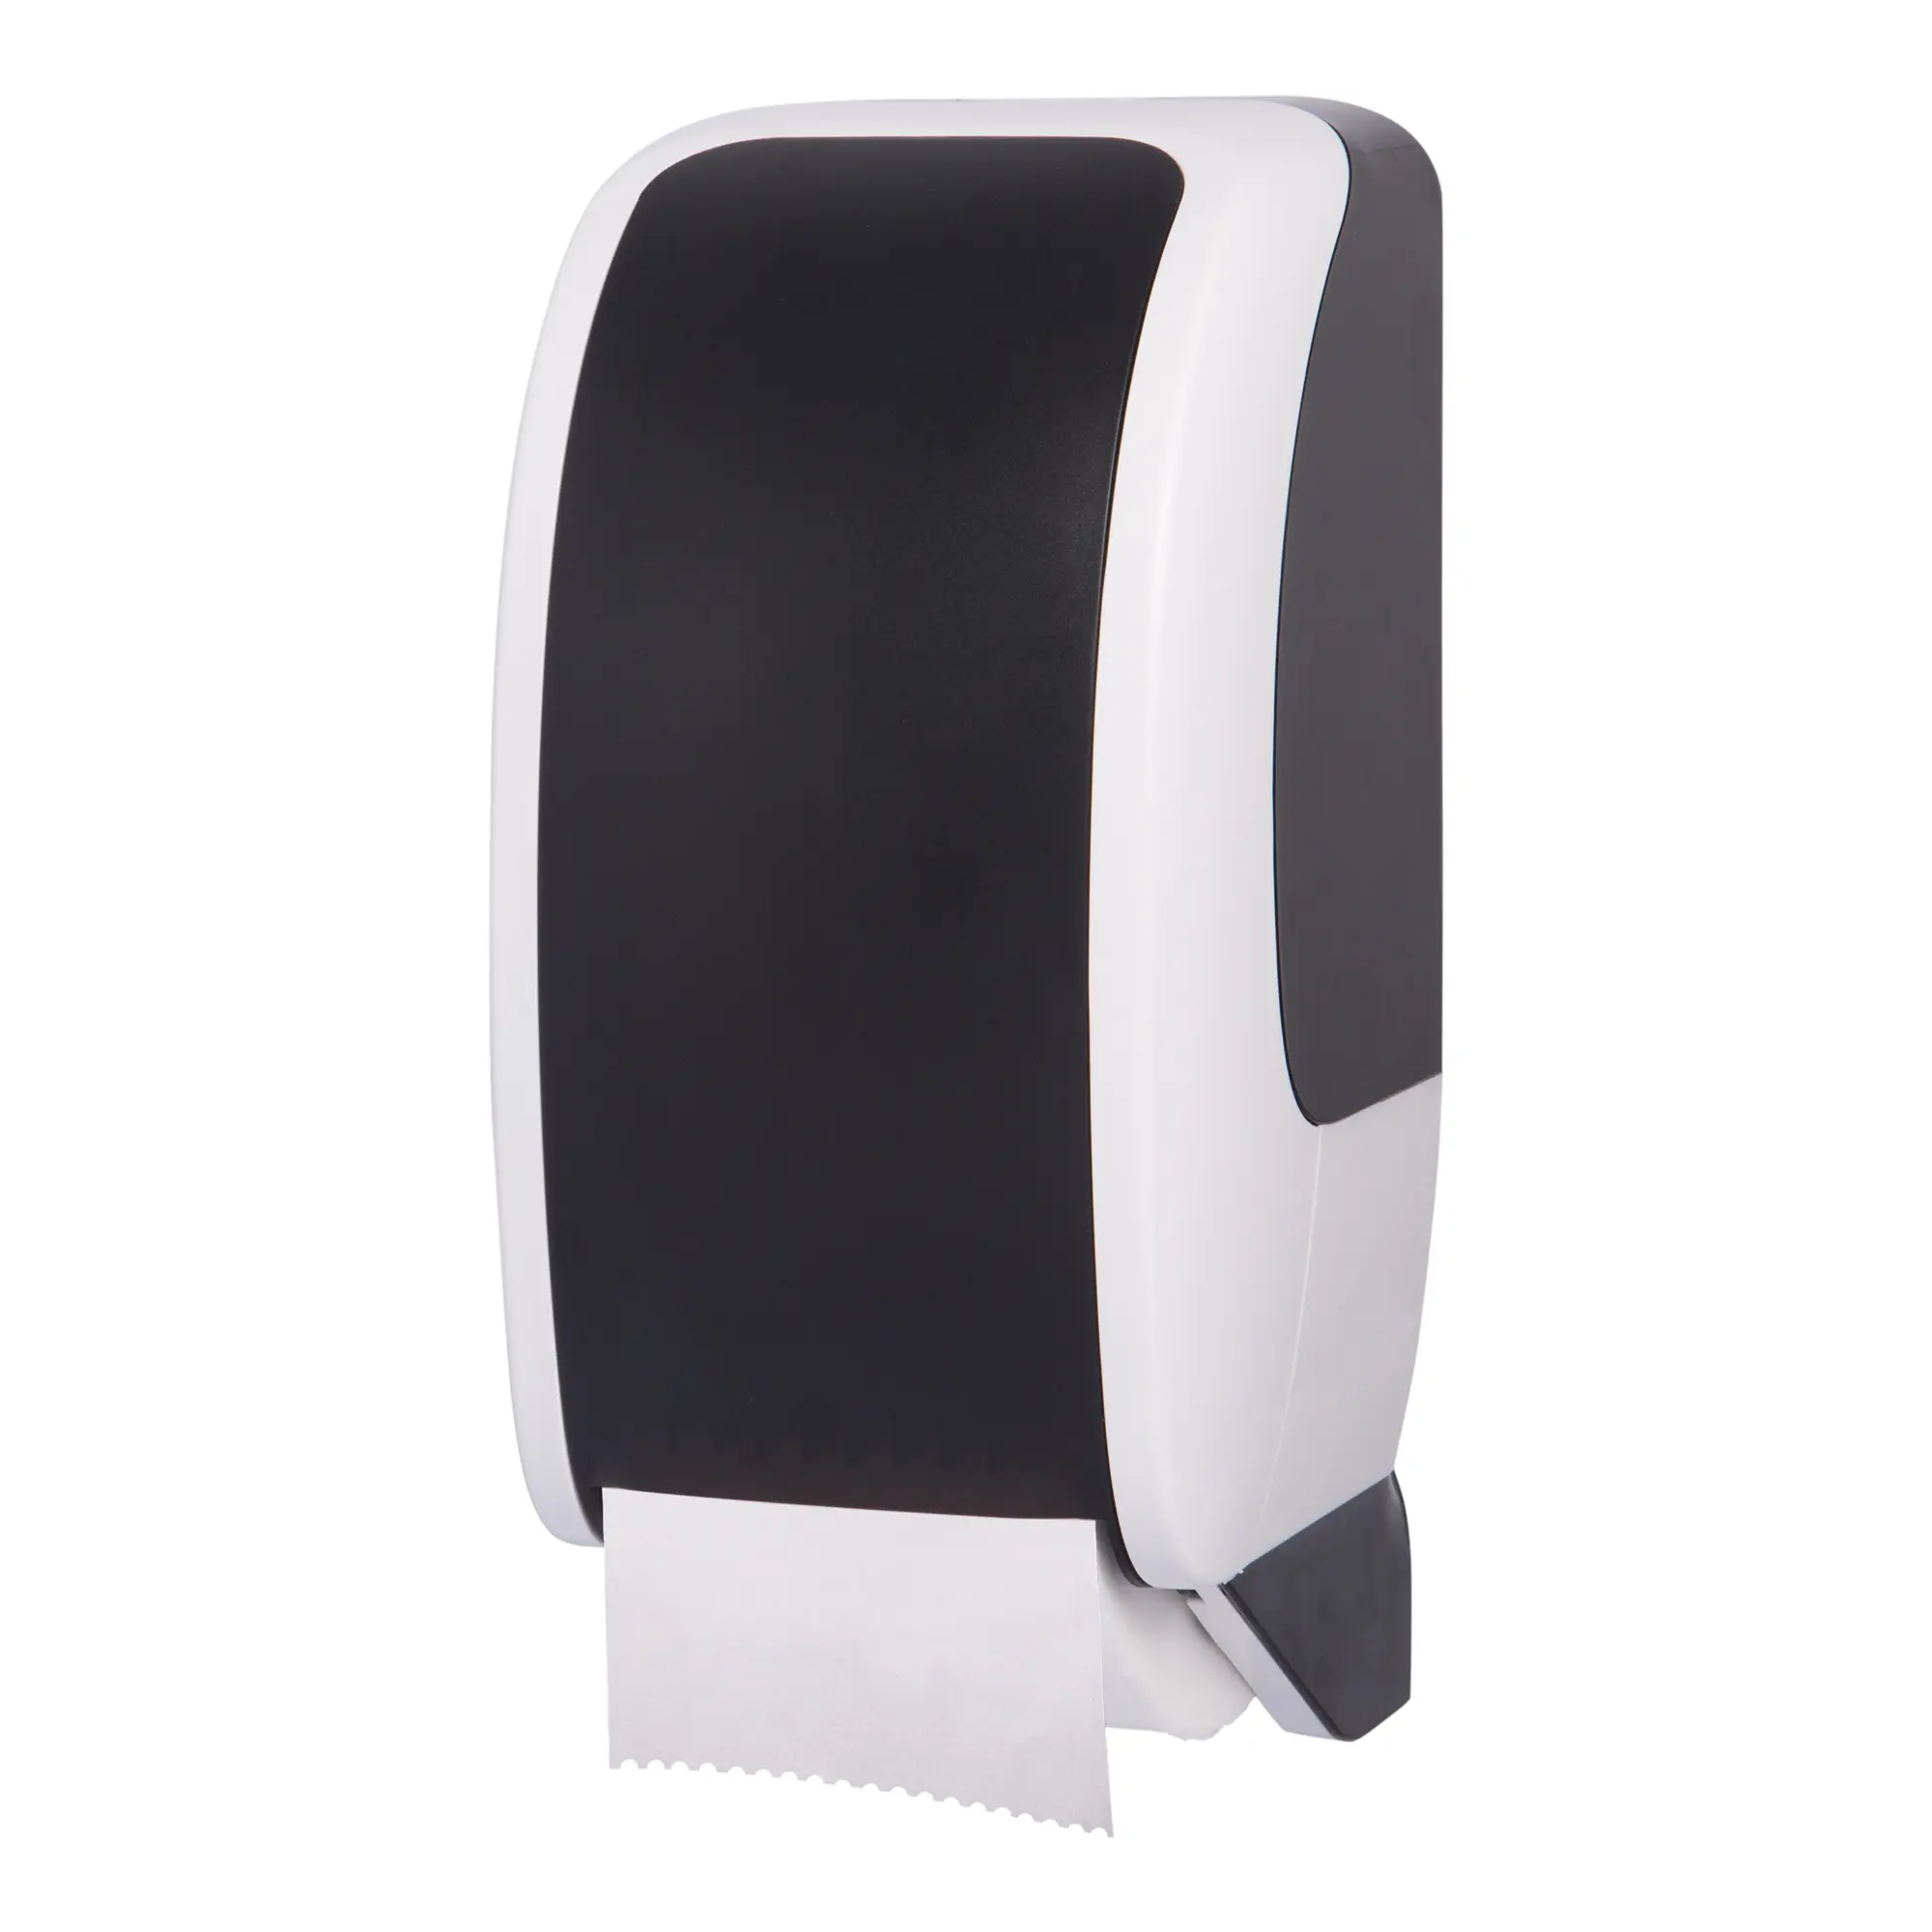 Cosmos Toilettenpapierspender schwarz/weiß Cosmos-2150_1